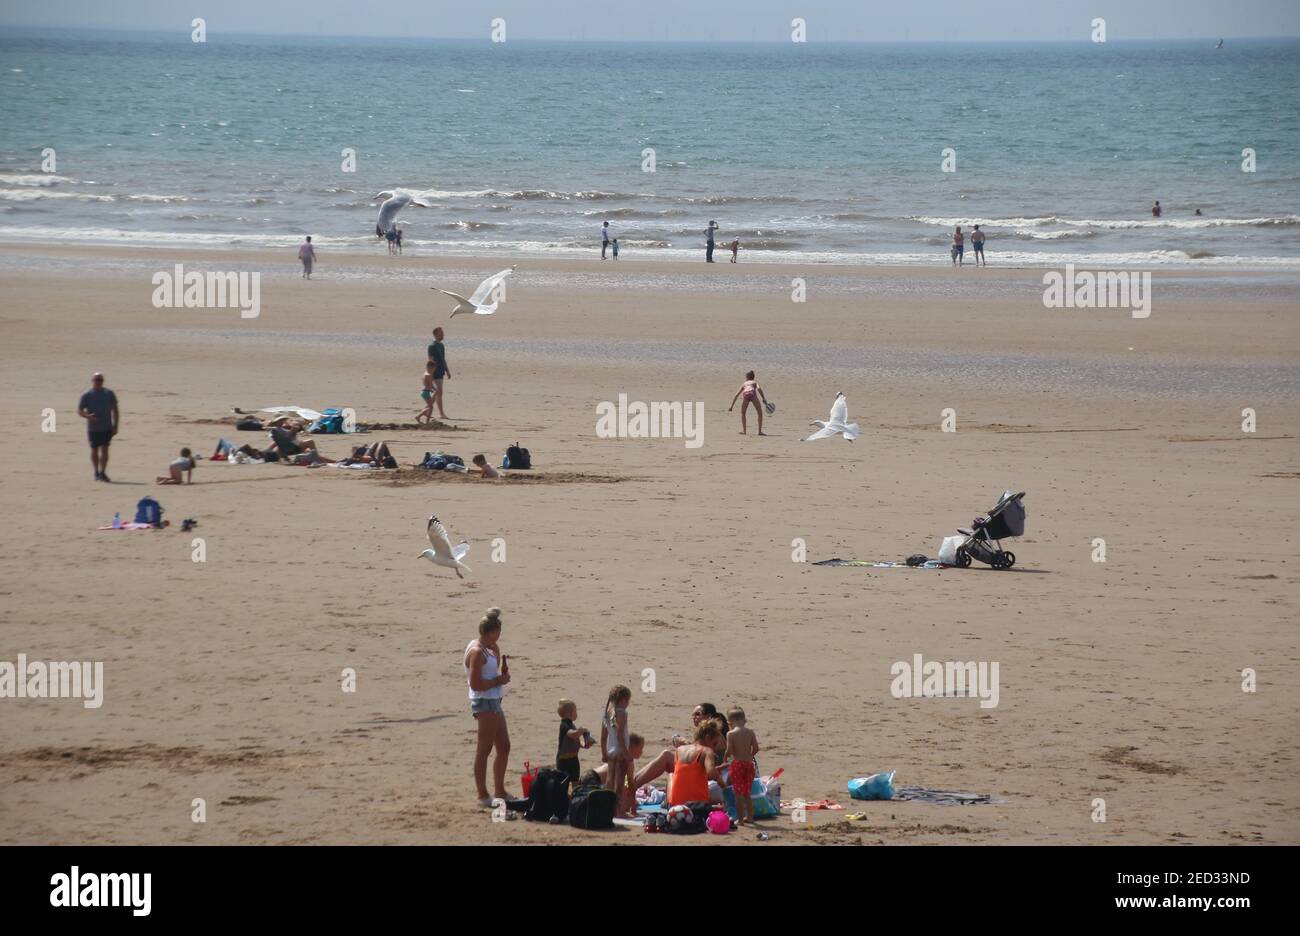 Der Sandstrand von St. Bees und das irische Meer. Viele Menschen genießen den sonnigen Tag am Strand. Westküste von England, in der Nähe des Lake District. Europa. Stockfoto